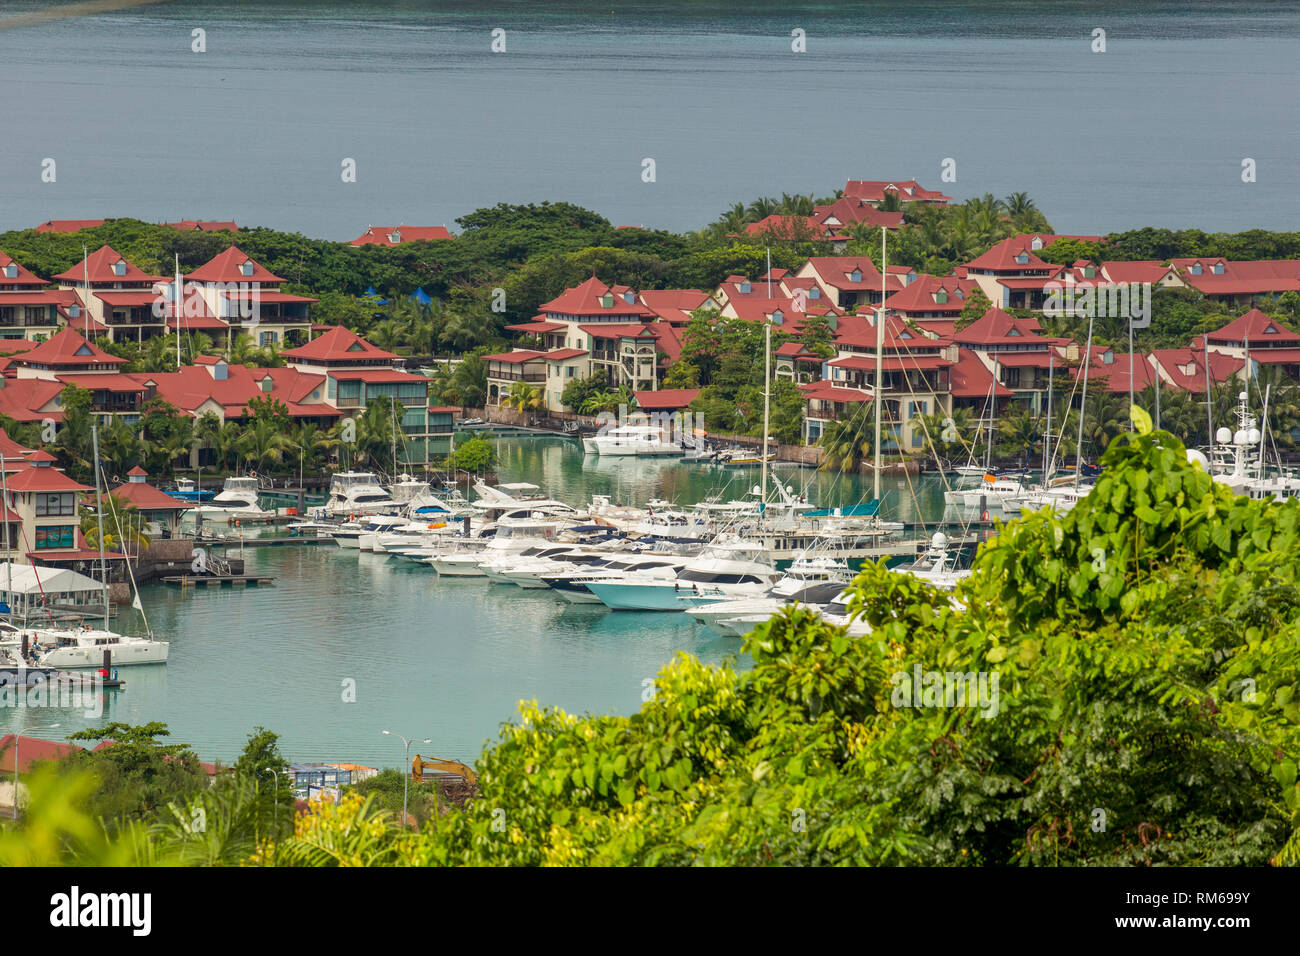 Victoria est la capitale des Seychelles et est situé au nord-est de l'île de Mahé, l'île principale de l'archipel. Banque D'Images